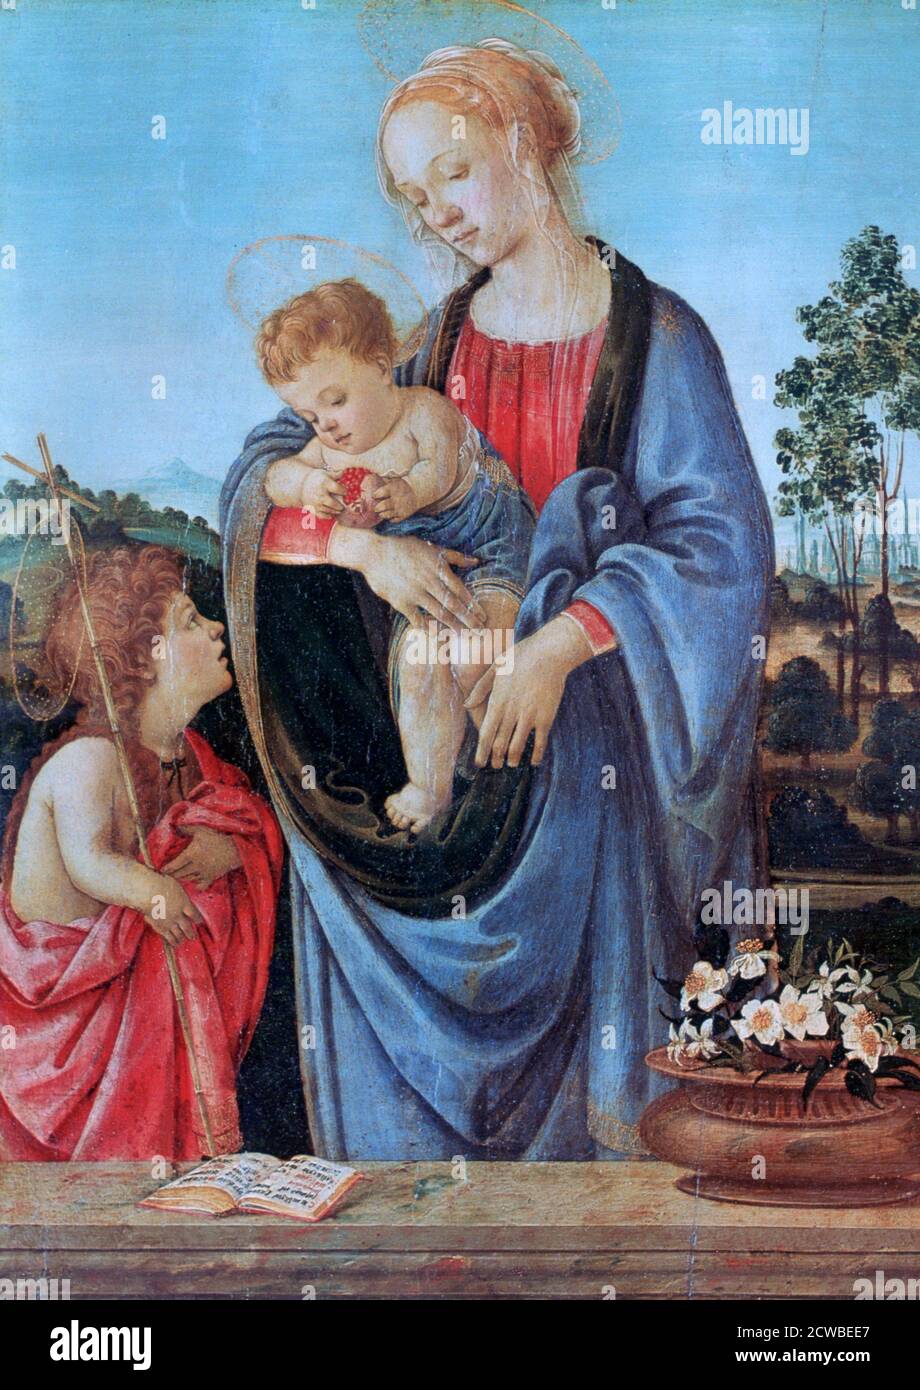 La Vergine col Bambino con San Giovanni, 1480. Artista: Filippino Lippi. Filippino Lippi (1406-1469) fu uno dei pittori rinascimentali più compiuti della fine del XV secolo, Filippino Lippi fu uno dei principali esponenti della tradizione dei grandi cicli di affreschi. Foto Stock